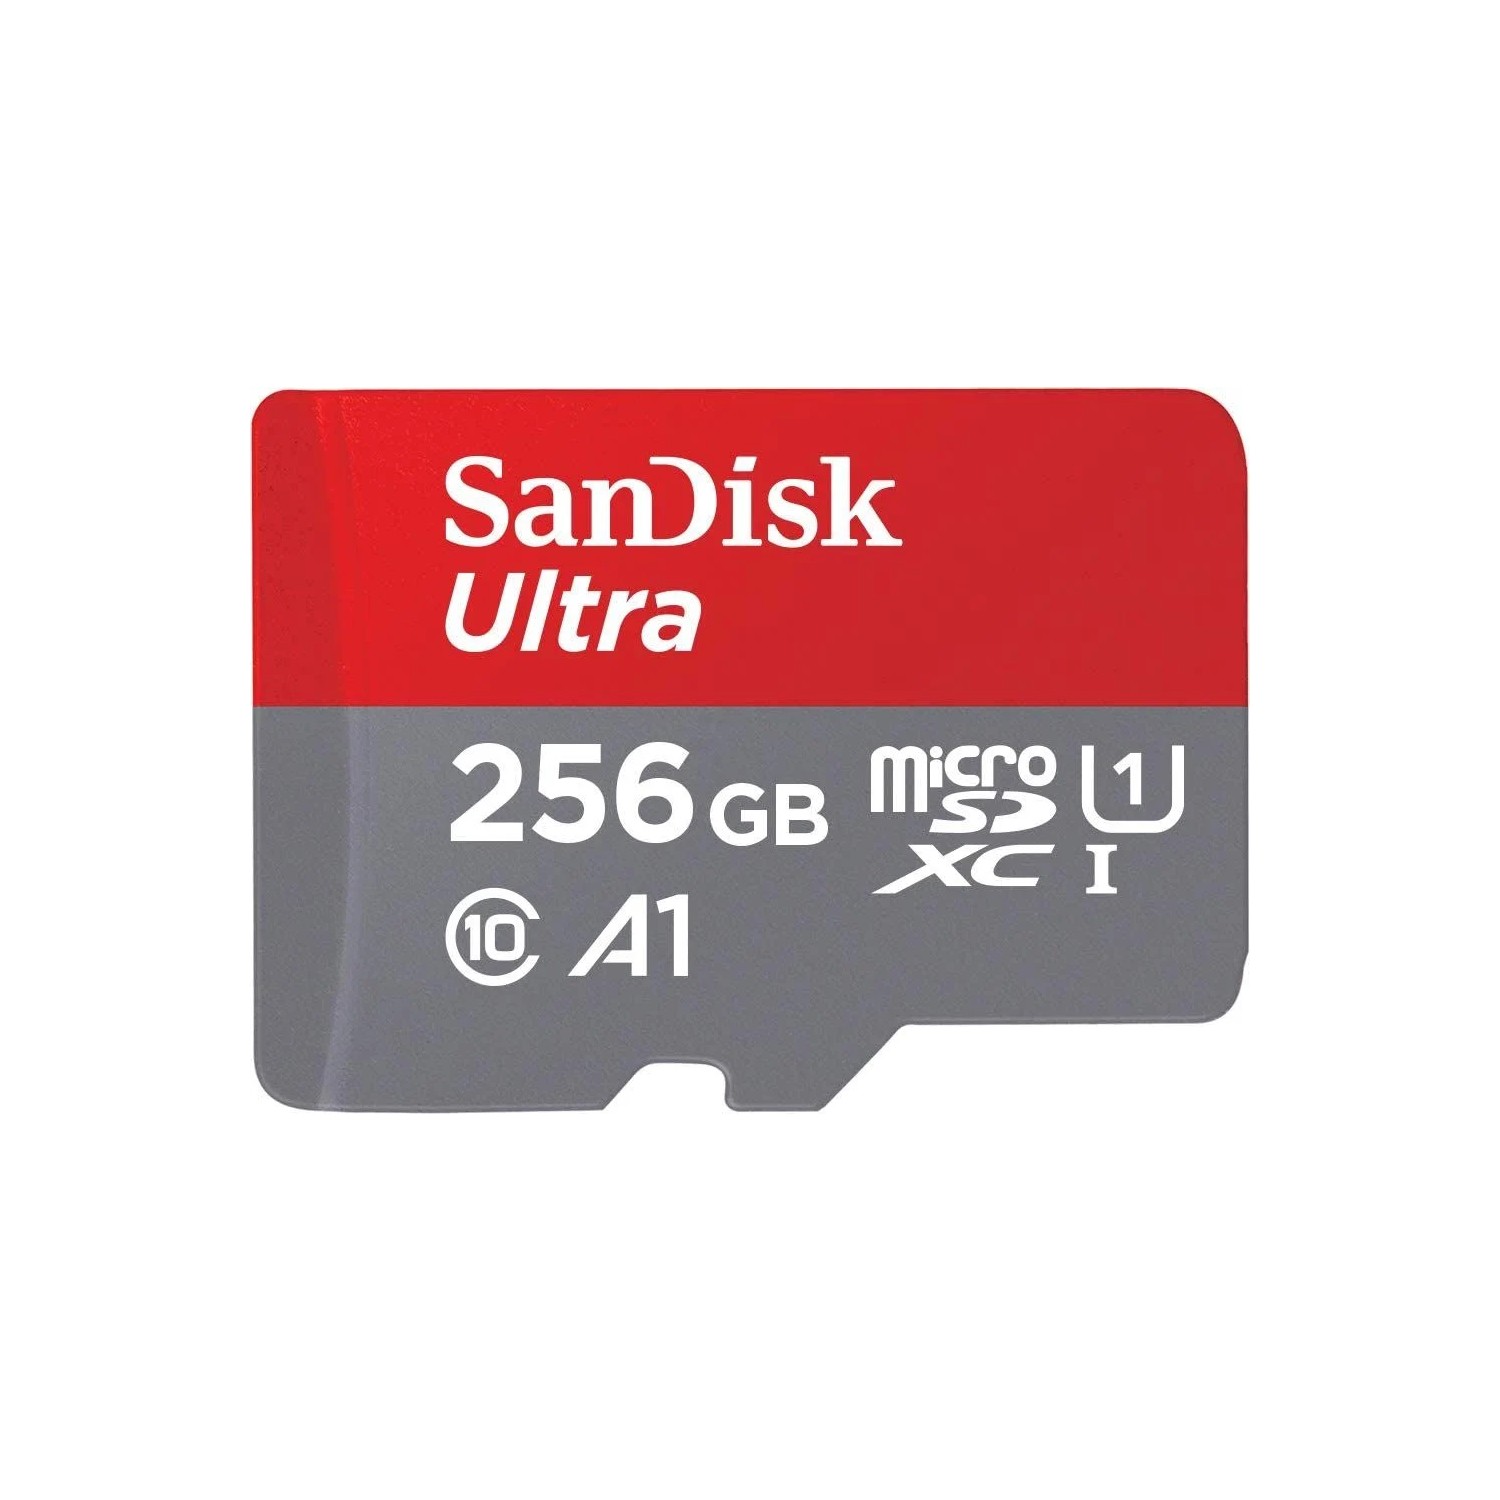 Sandisk Ultra 256GB 150MB/S Microsdxc Uhs-I Hafıza Kartı Fiyatı